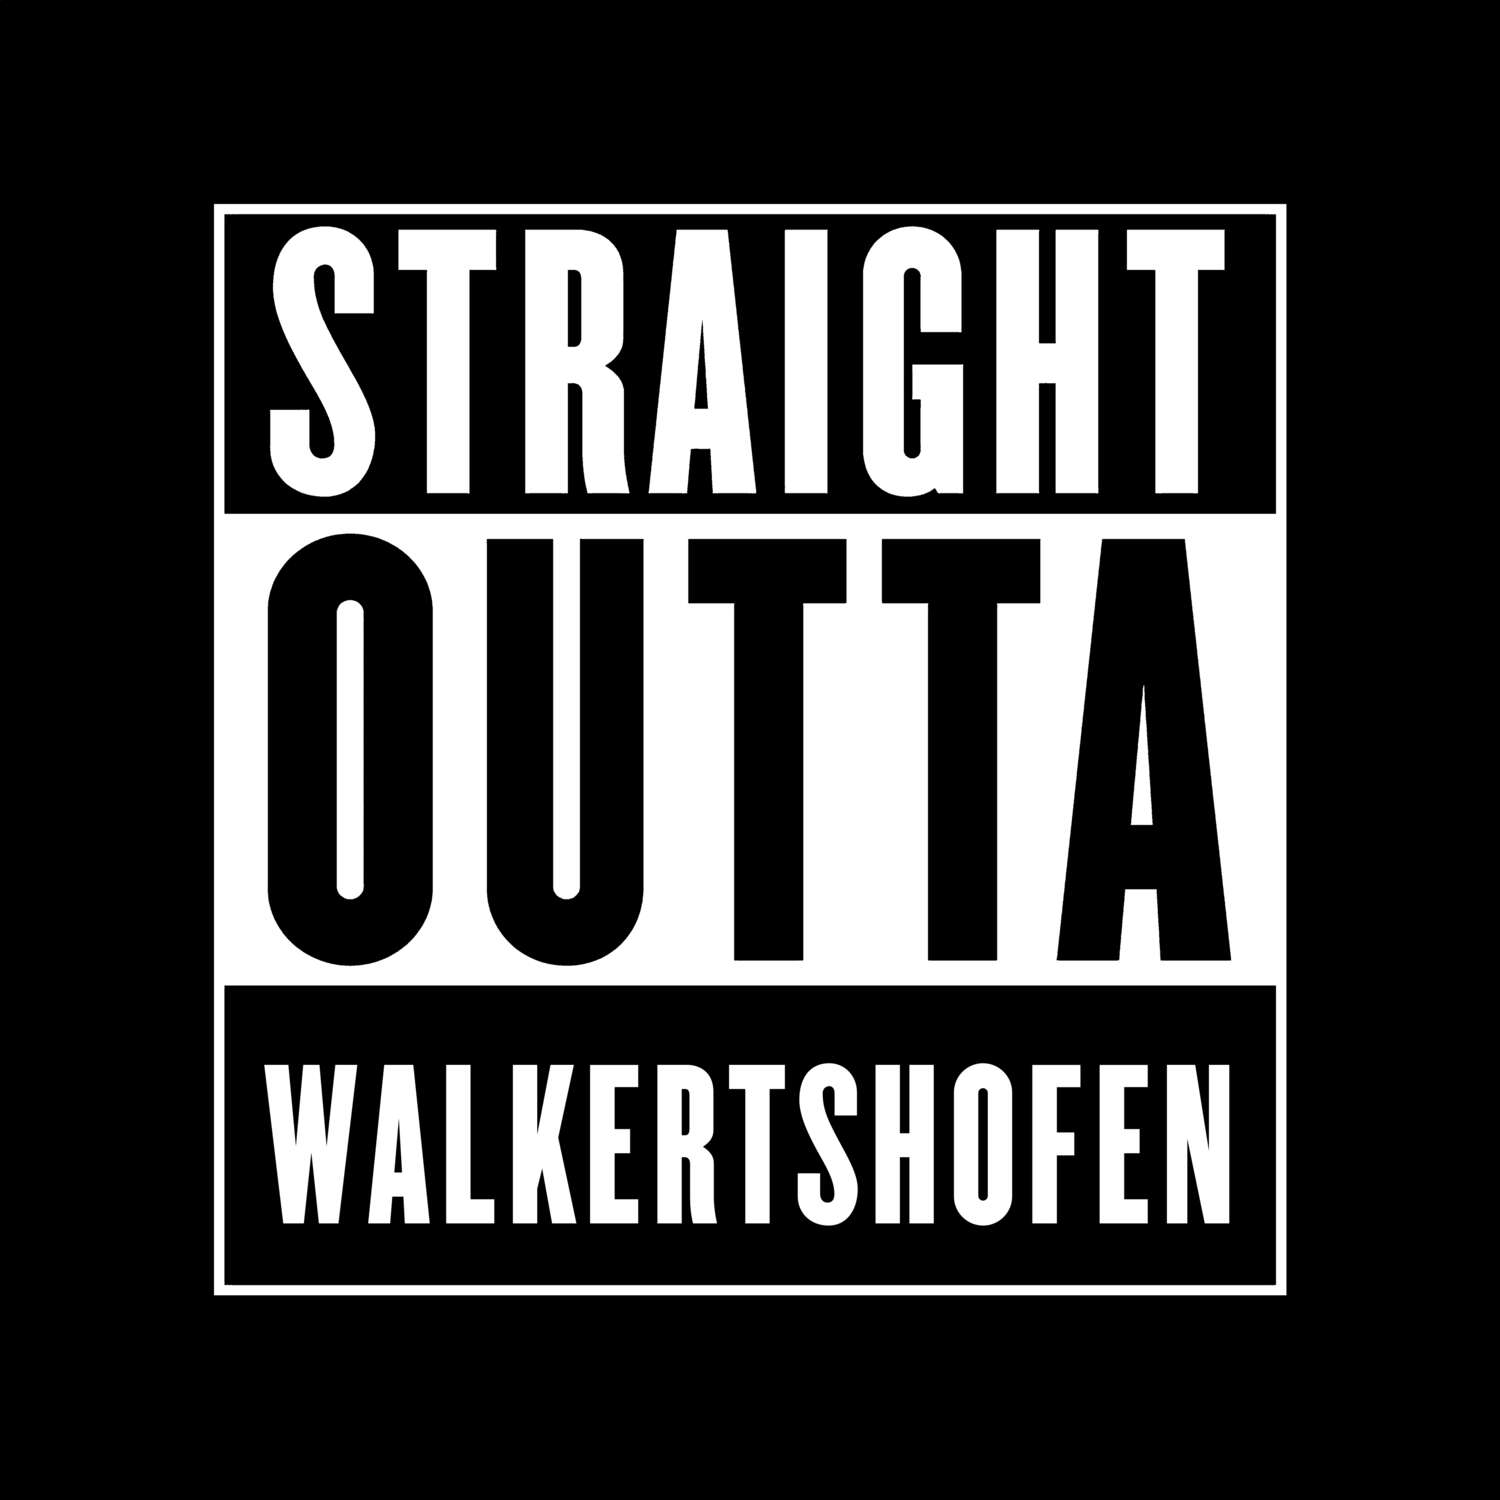 Walkertshofen T-Shirt »Straight Outta«